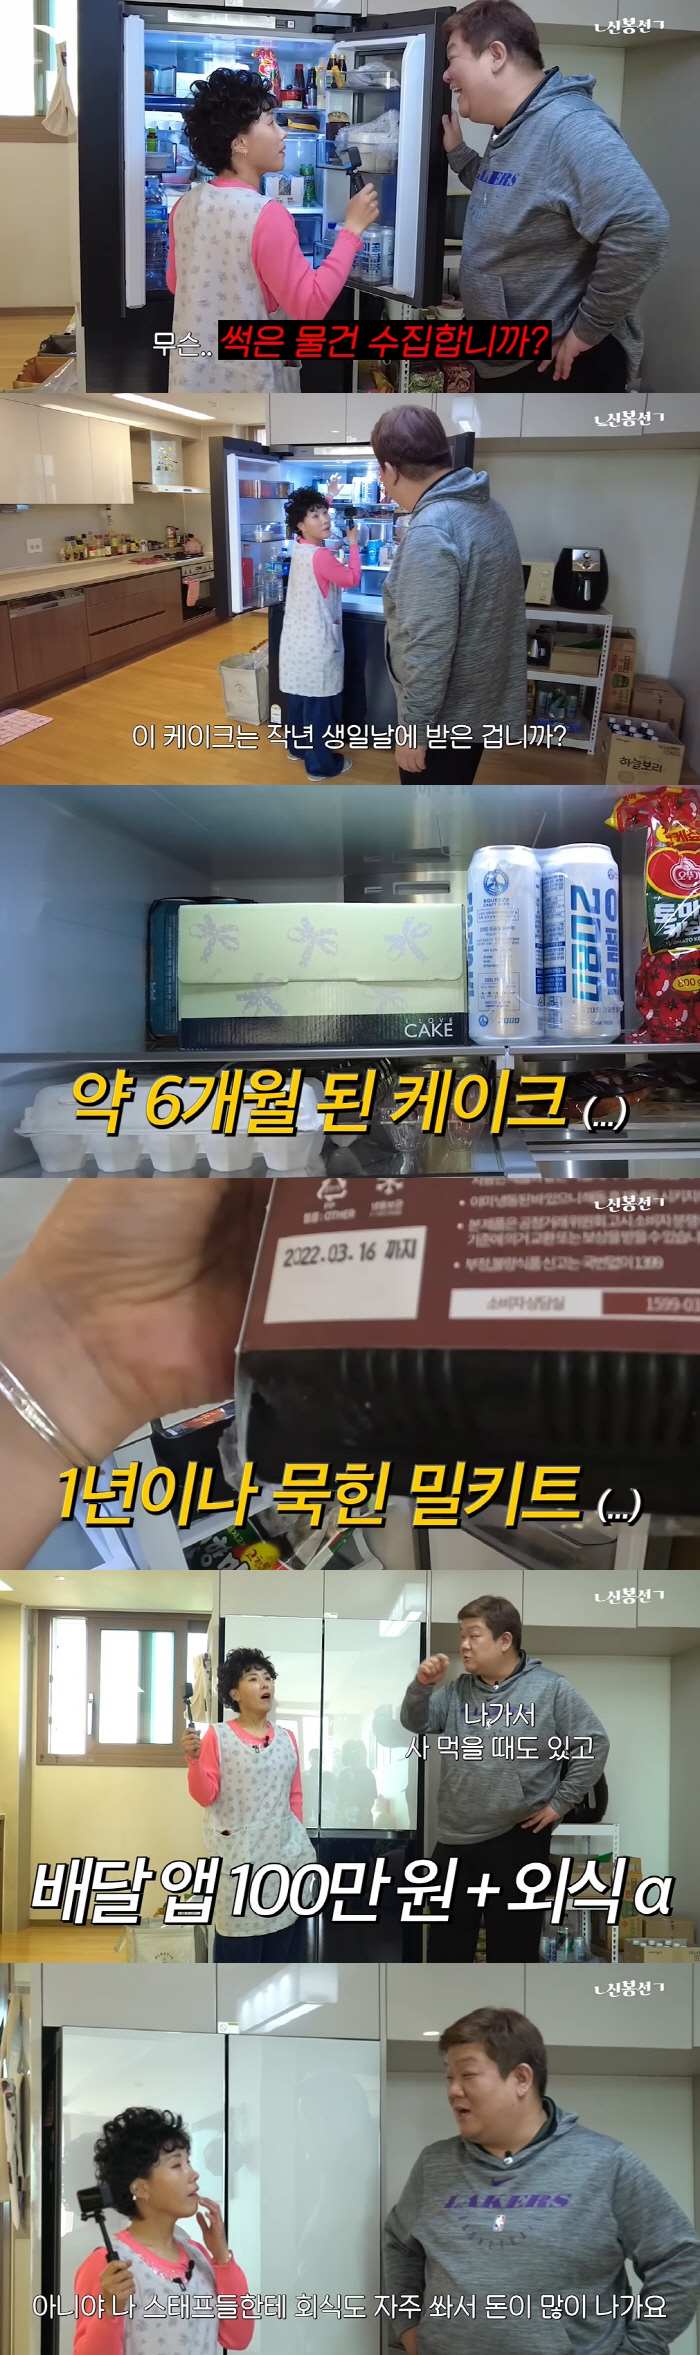 신봉선, 유민상 1년 묵힌 밀키트 발견..."썩은 물건 수집하냐" ('ㄴ…